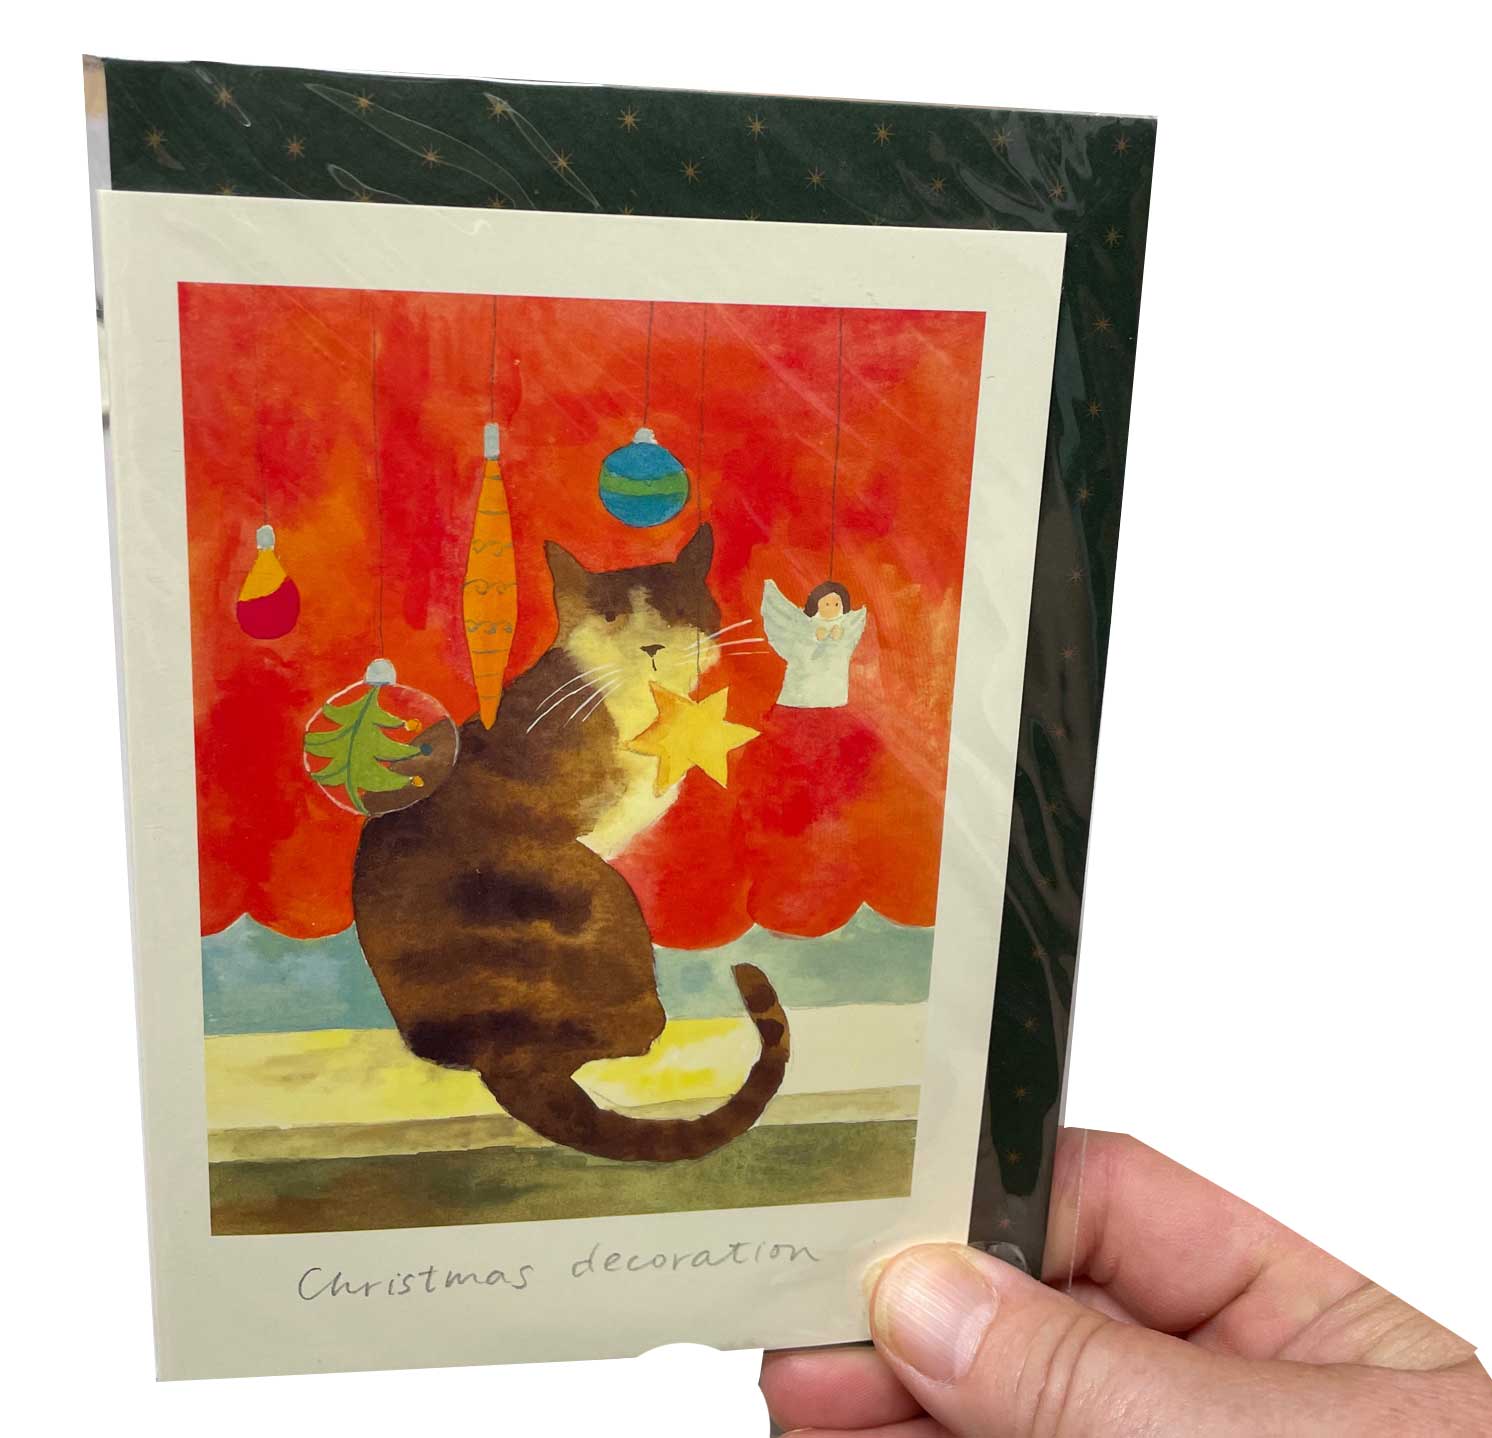 Two Bad Mice  Doppelkarte Weihnachten "Christmas Decoration" von Two Bad Mice, Katze von Anna Shuttlewood